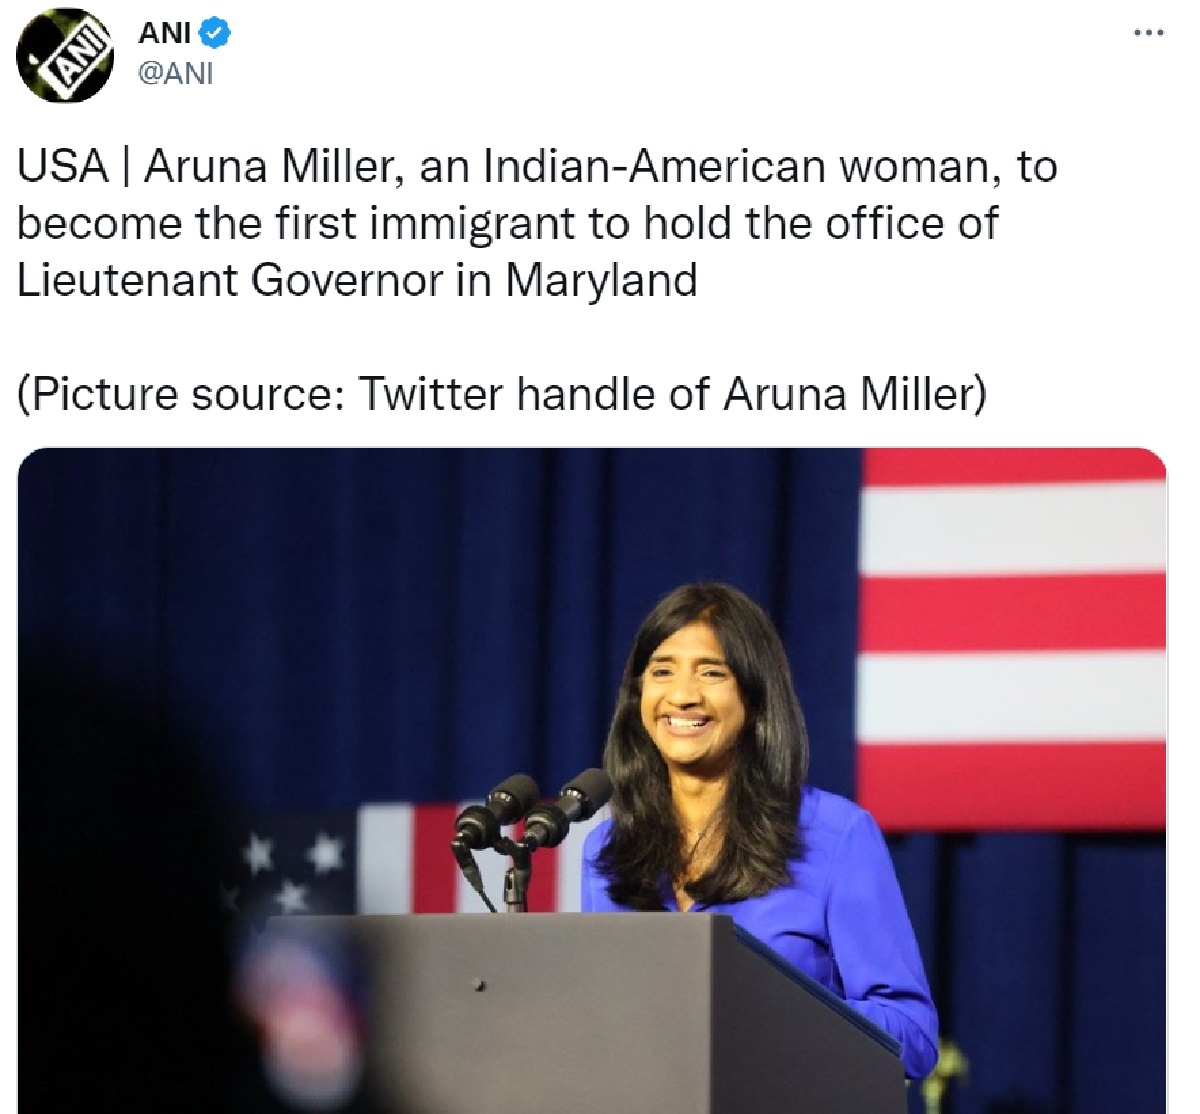 Aruna Miller: अमेरिका में भारतीय मूल की अरुणा मिलर ने रचा इतिहास, मैरीलैंड  की लेफ्टिनेंट गवर्नर बनीं - Indian American Aruna Miller to become first  immigrant to hold the office of ...